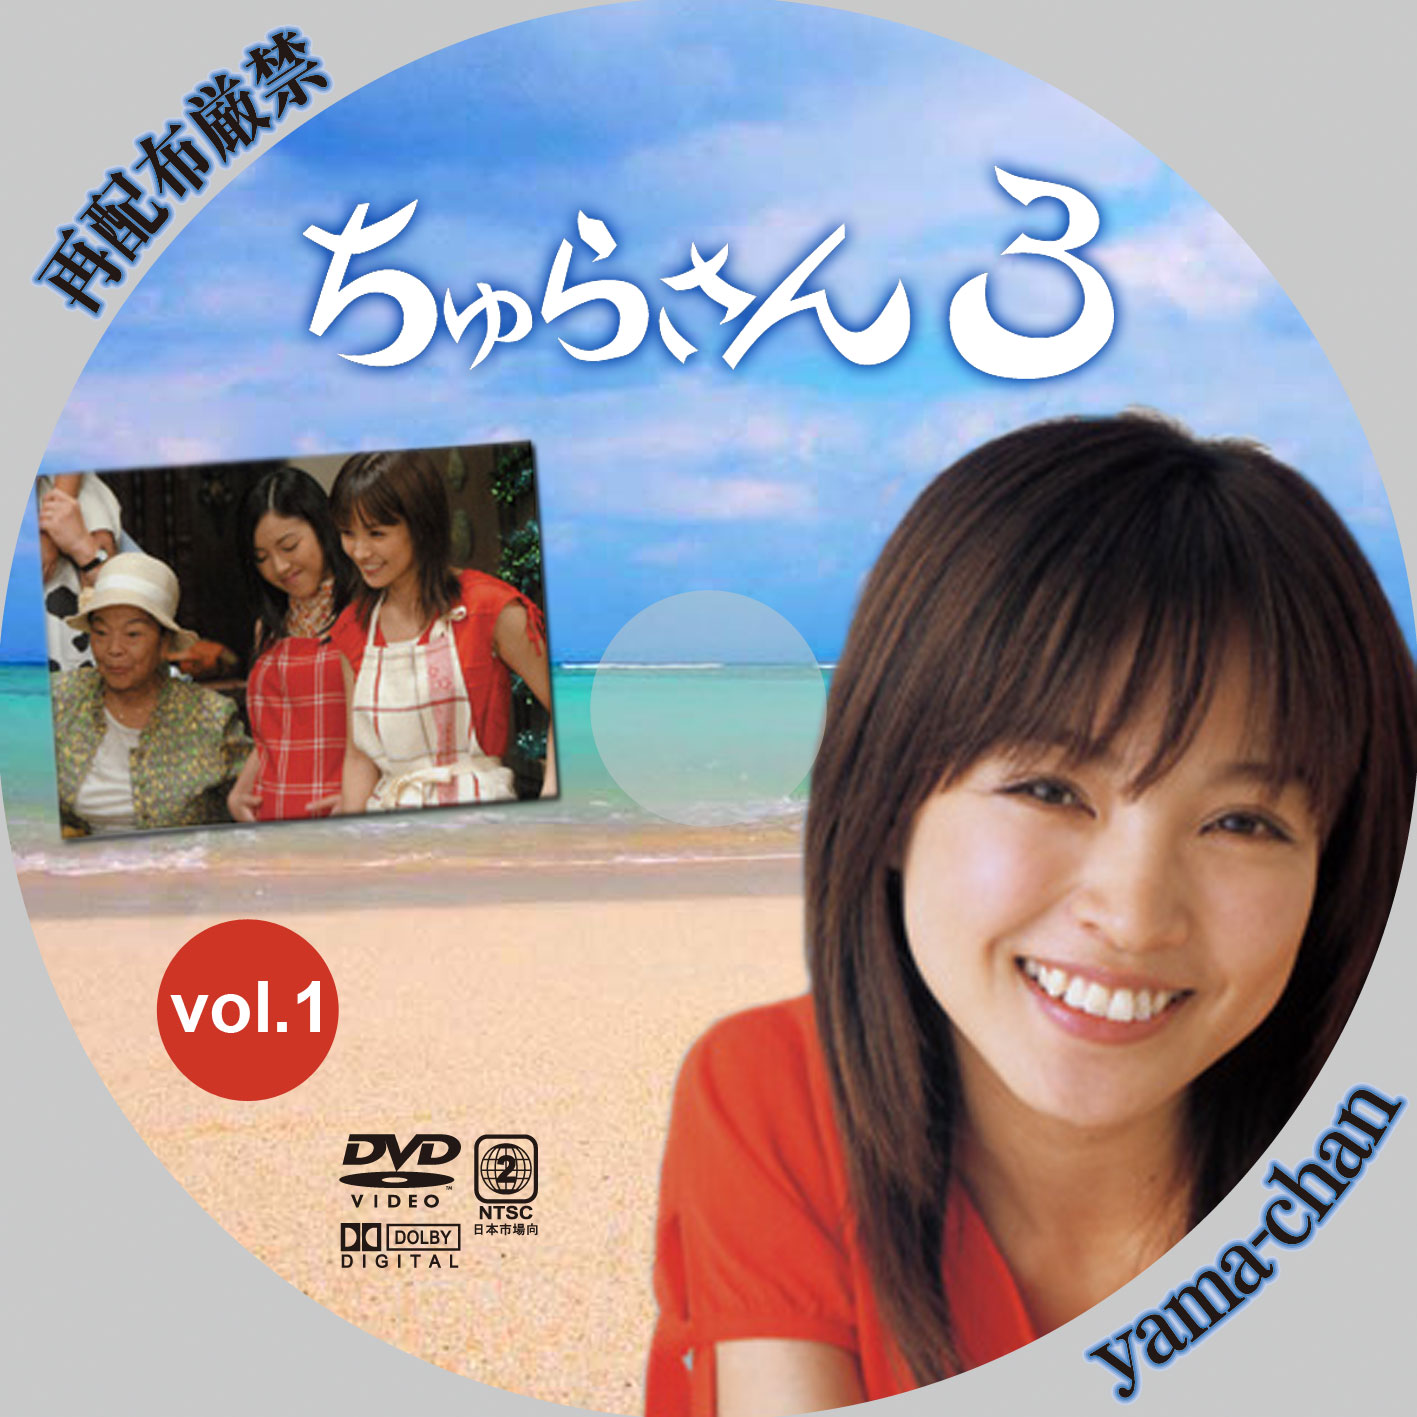 ちゅらさん3 DVD-BOX ポニーキャニオン 格安: 森本とんぼのブログ